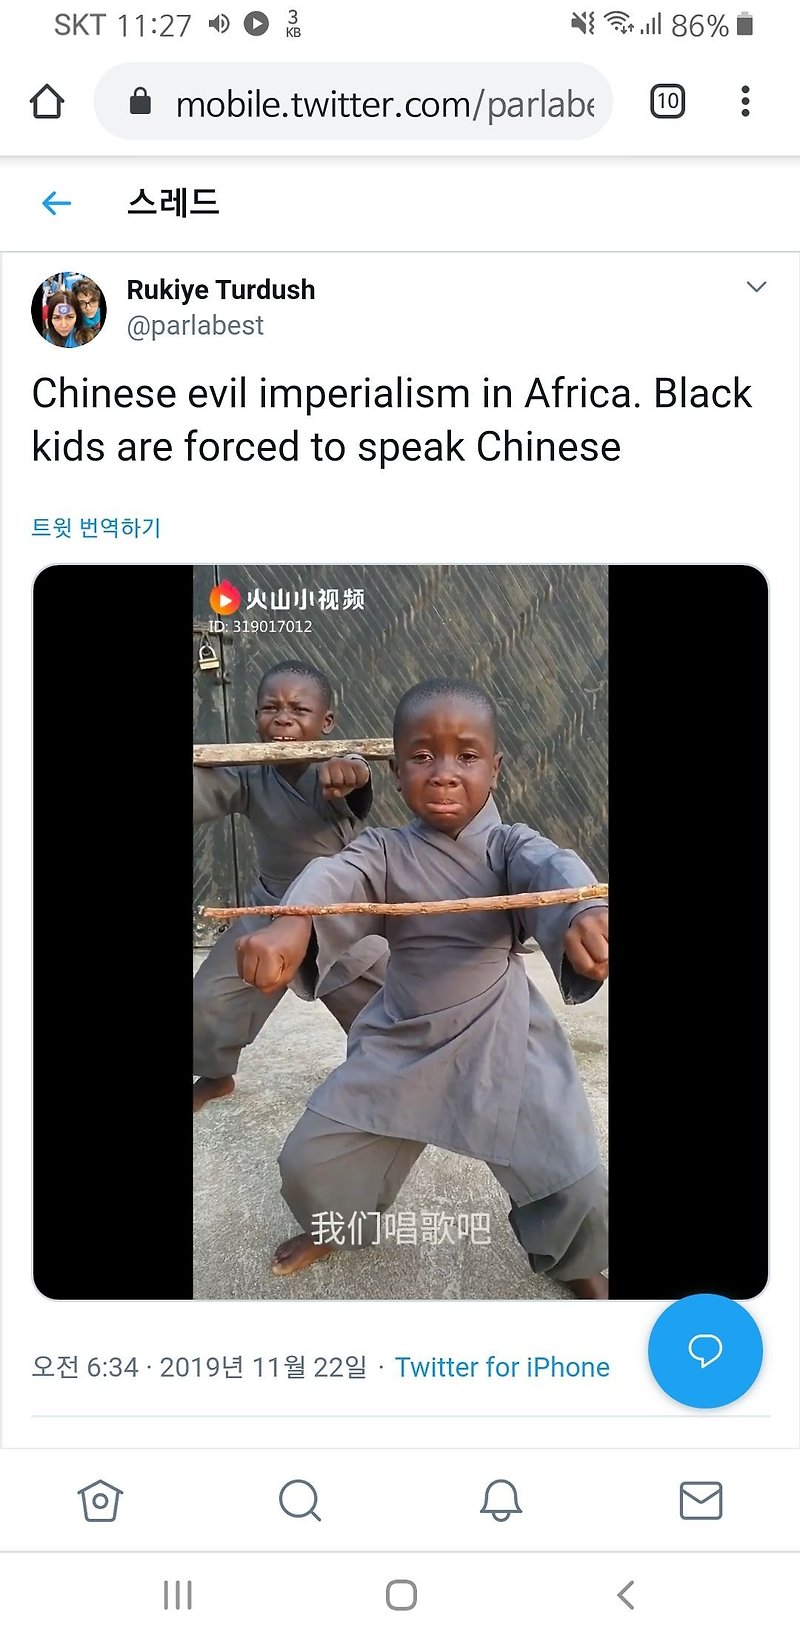 중국이 일대일로 사업으로 아프리카에 세운 학교 아동학대 논란